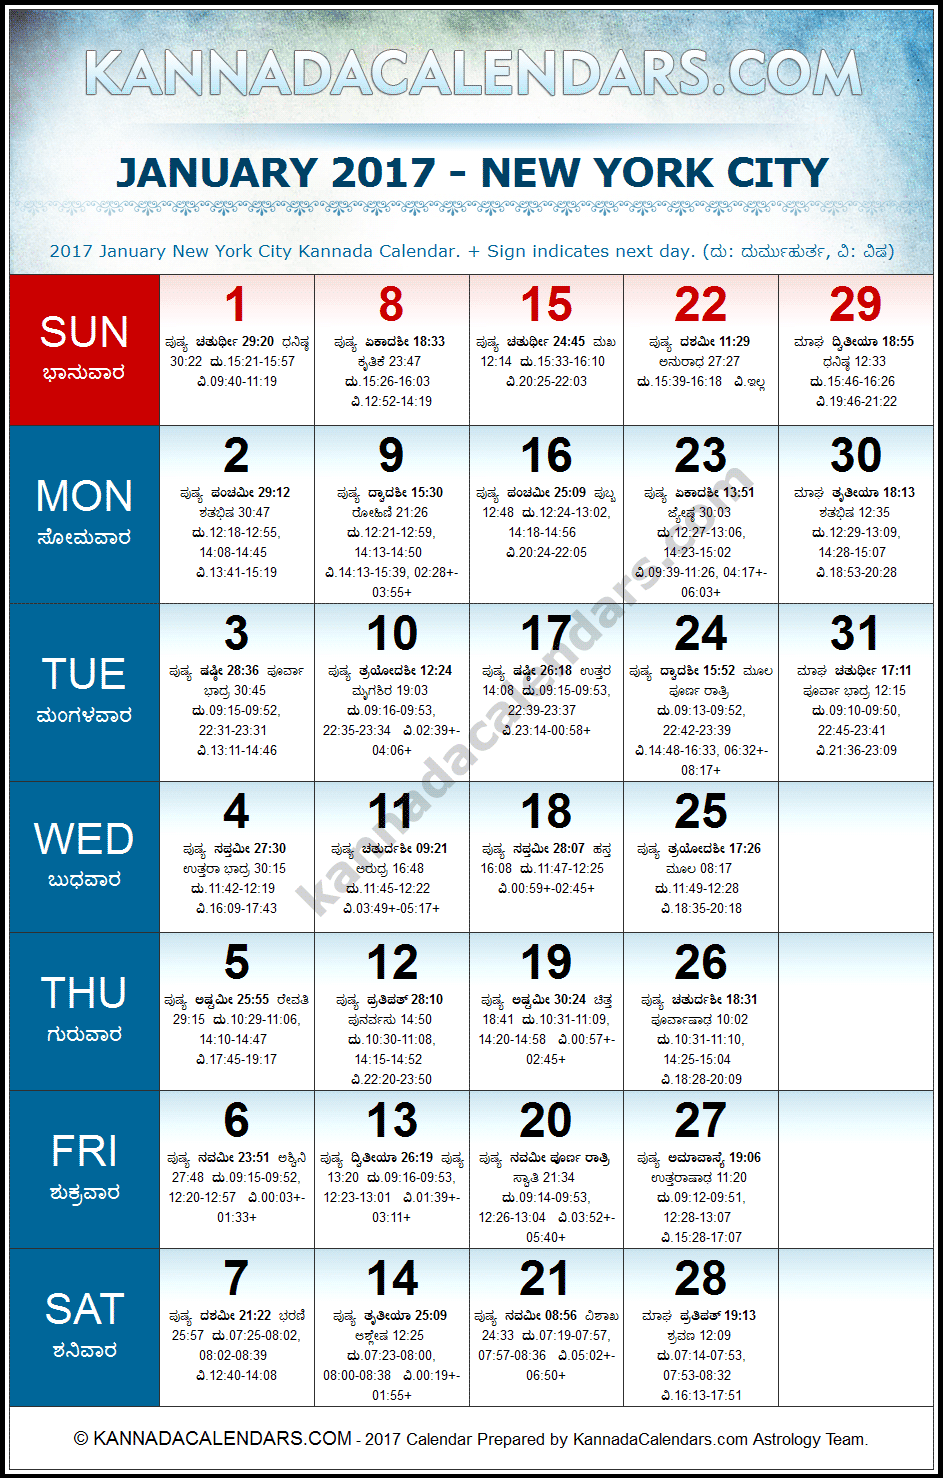 January 2017 Kannada Calendar for New York, USA